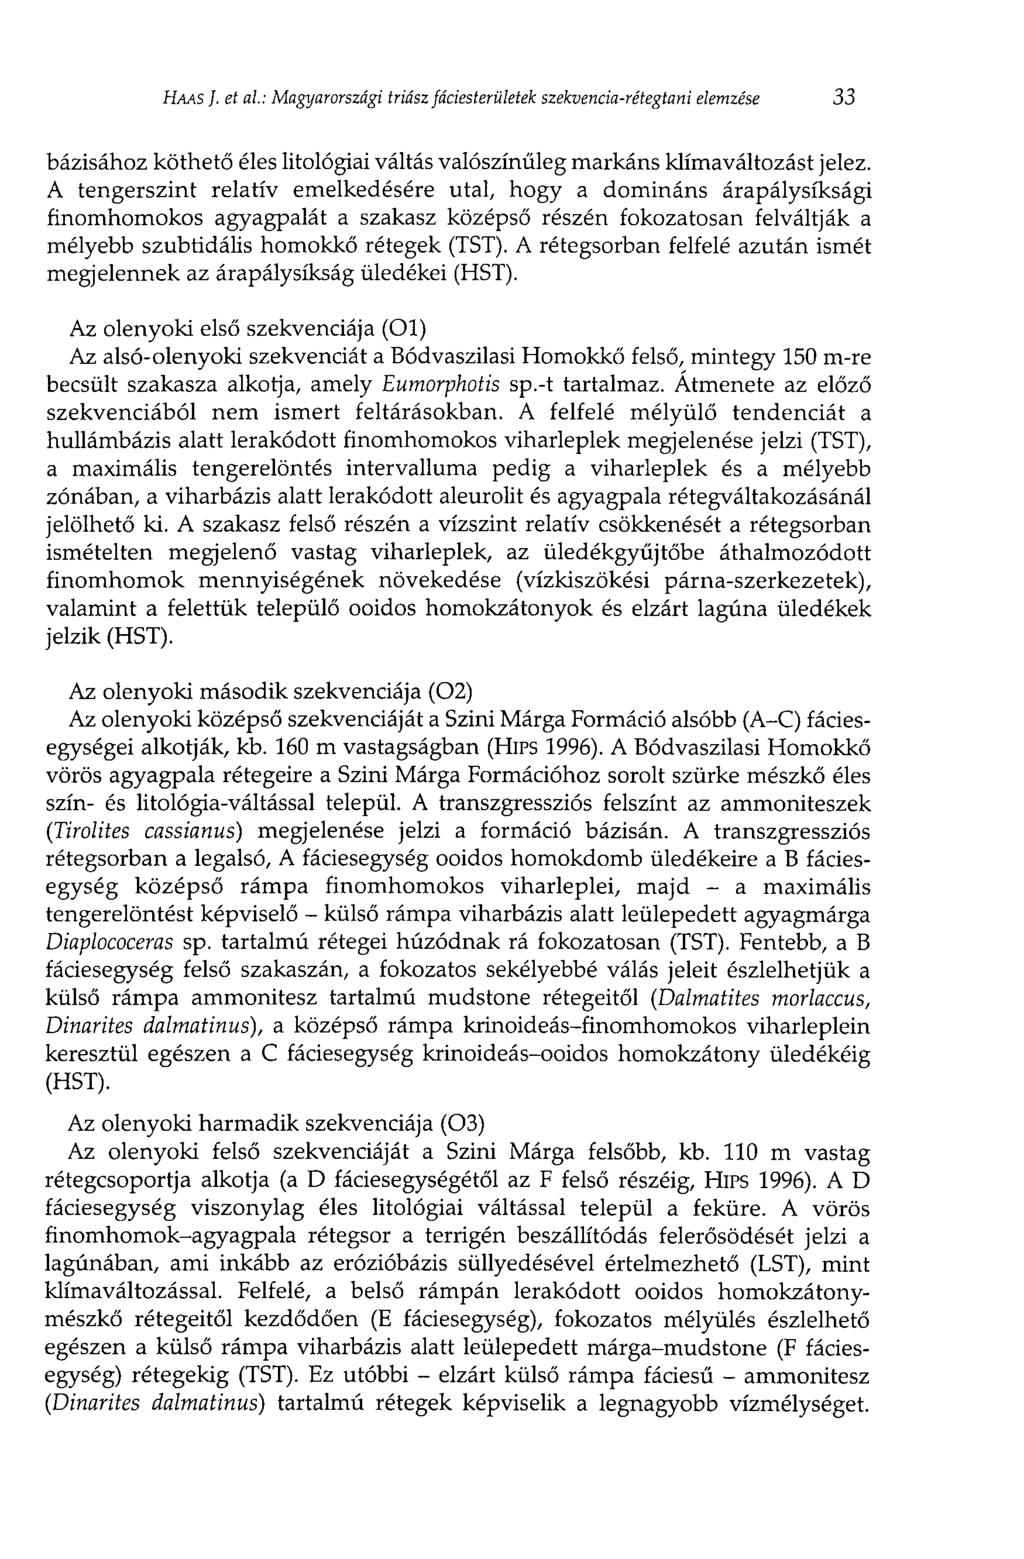 HAAS J. et al: Magyarországi triász fáciesterületek szekvencia-rétegtani elemzése 33 bázisához köthető éles litológiai váltás valószínűleg markáns klímaváltozást jelez.